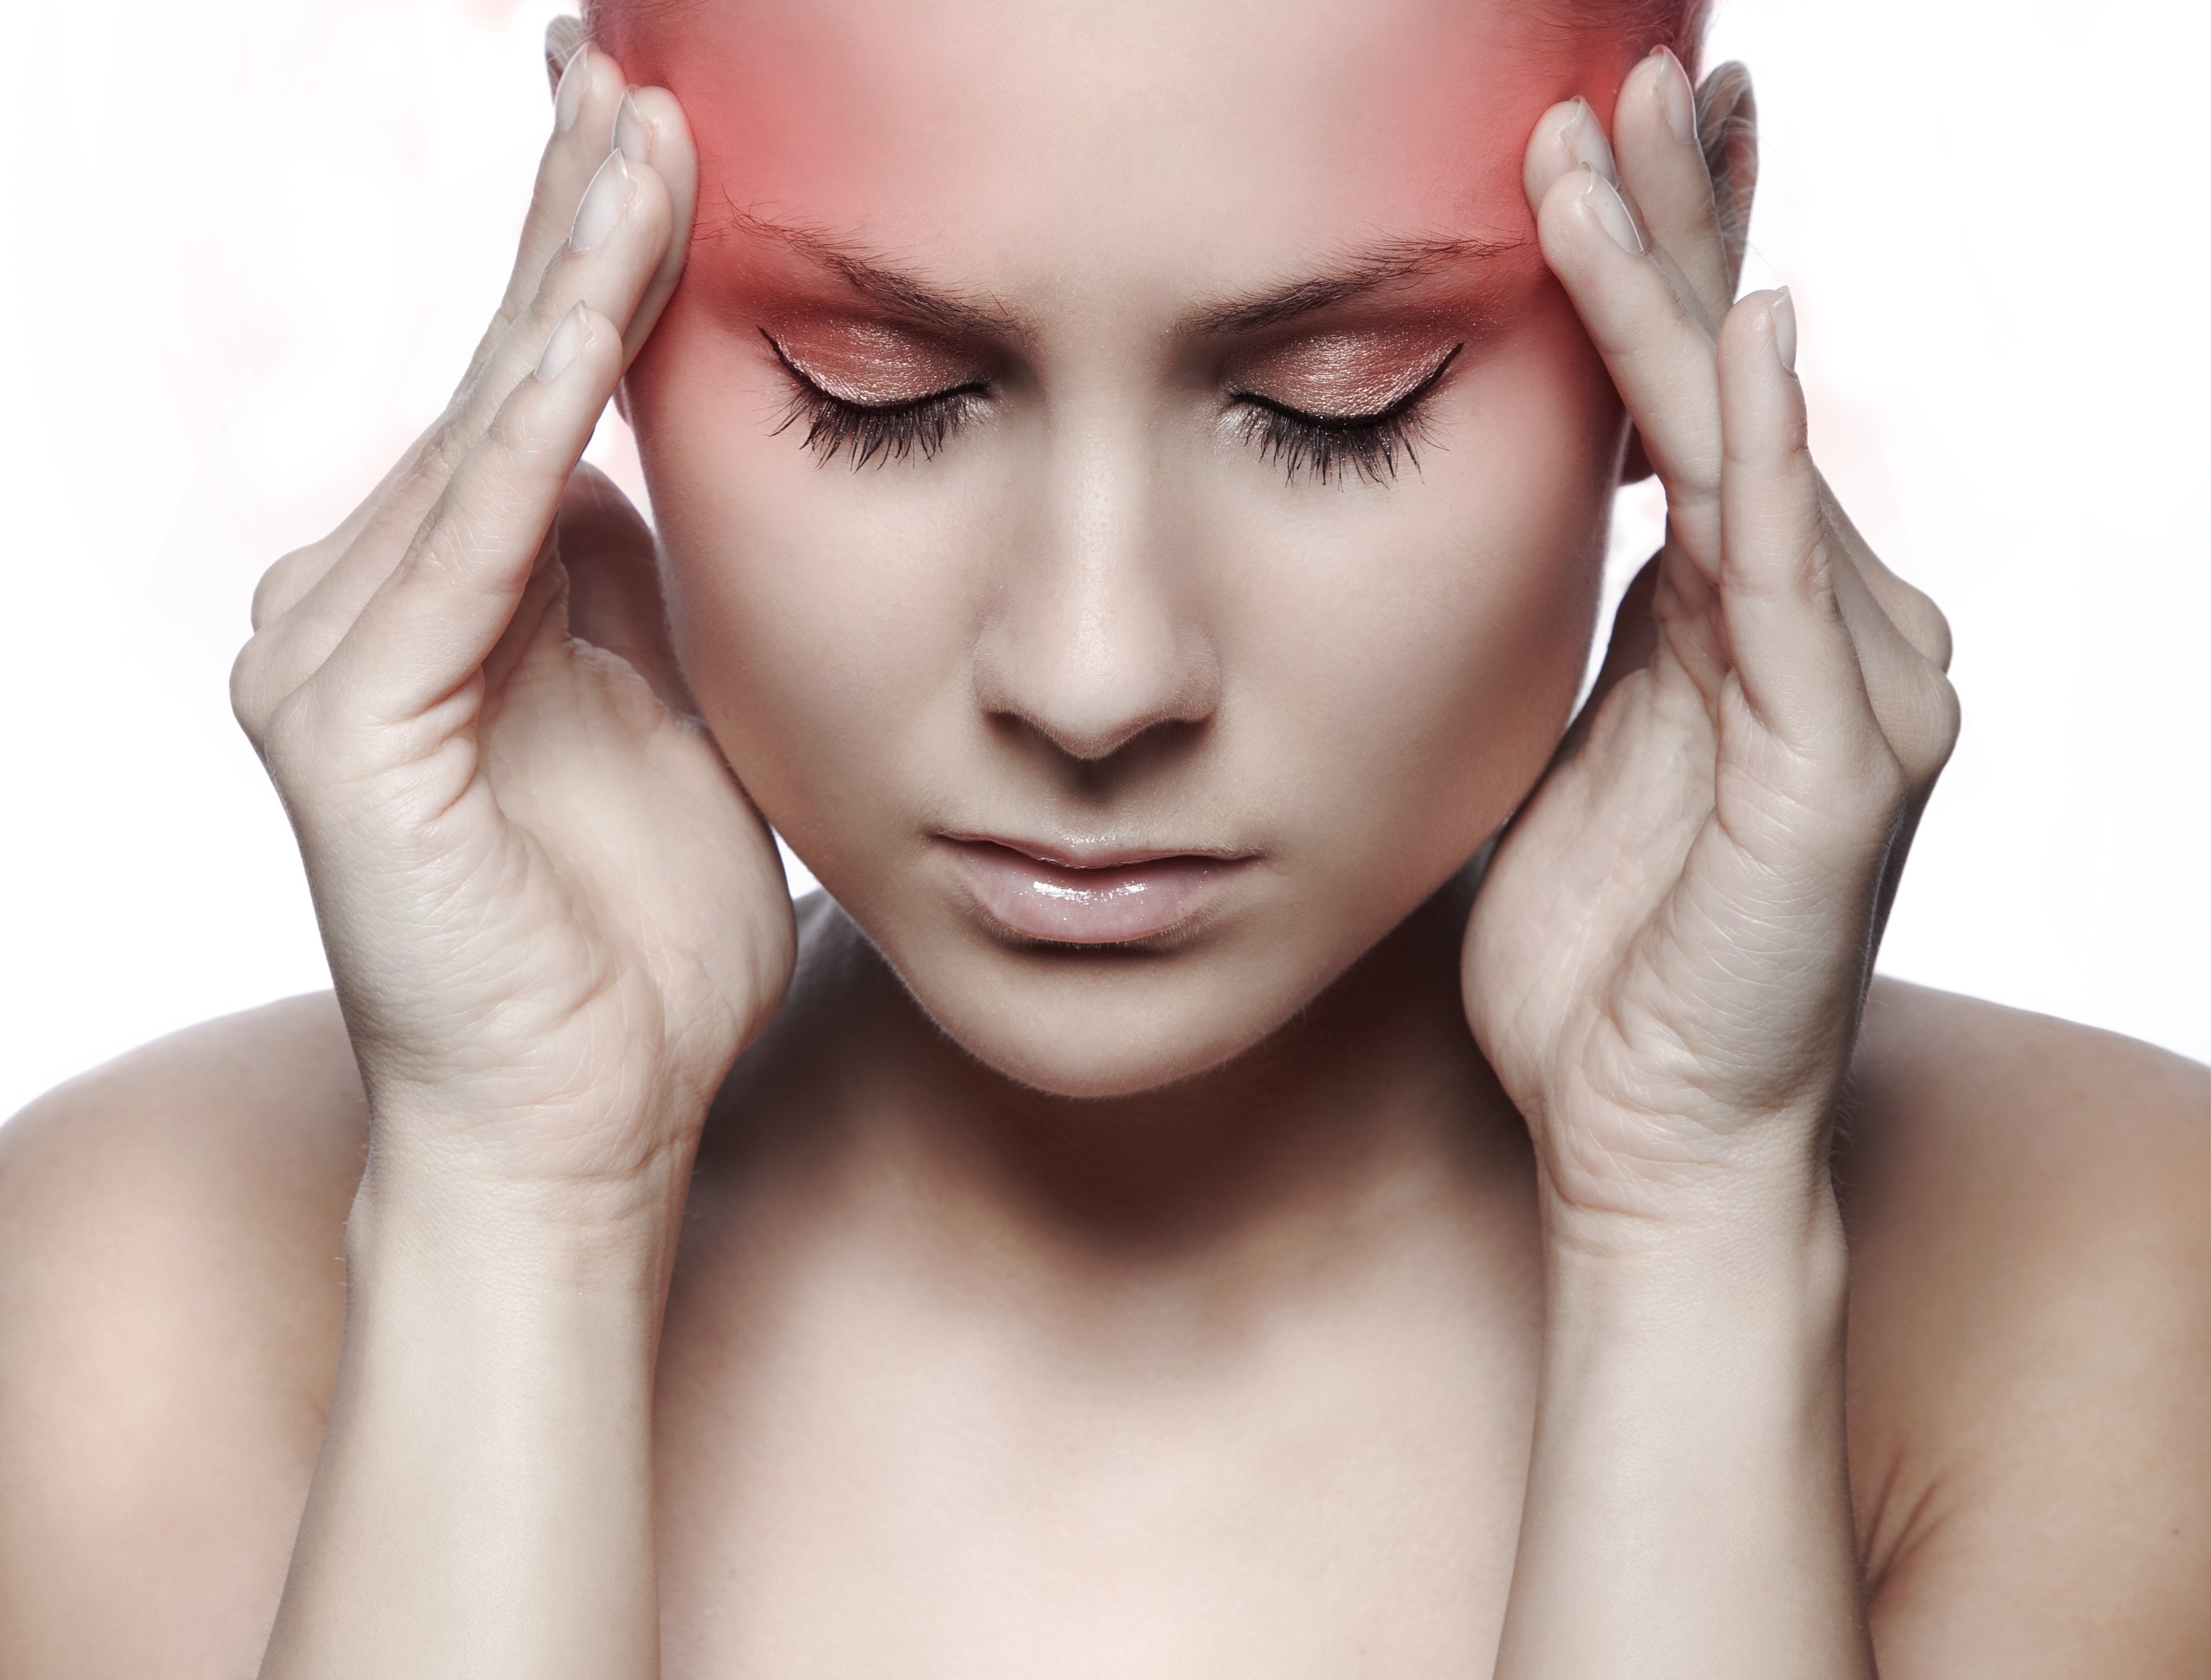 Μήπως το στρες σας προκαλεί πονοκέφαλο; Συμβουλές για άμεση ανακούφιση